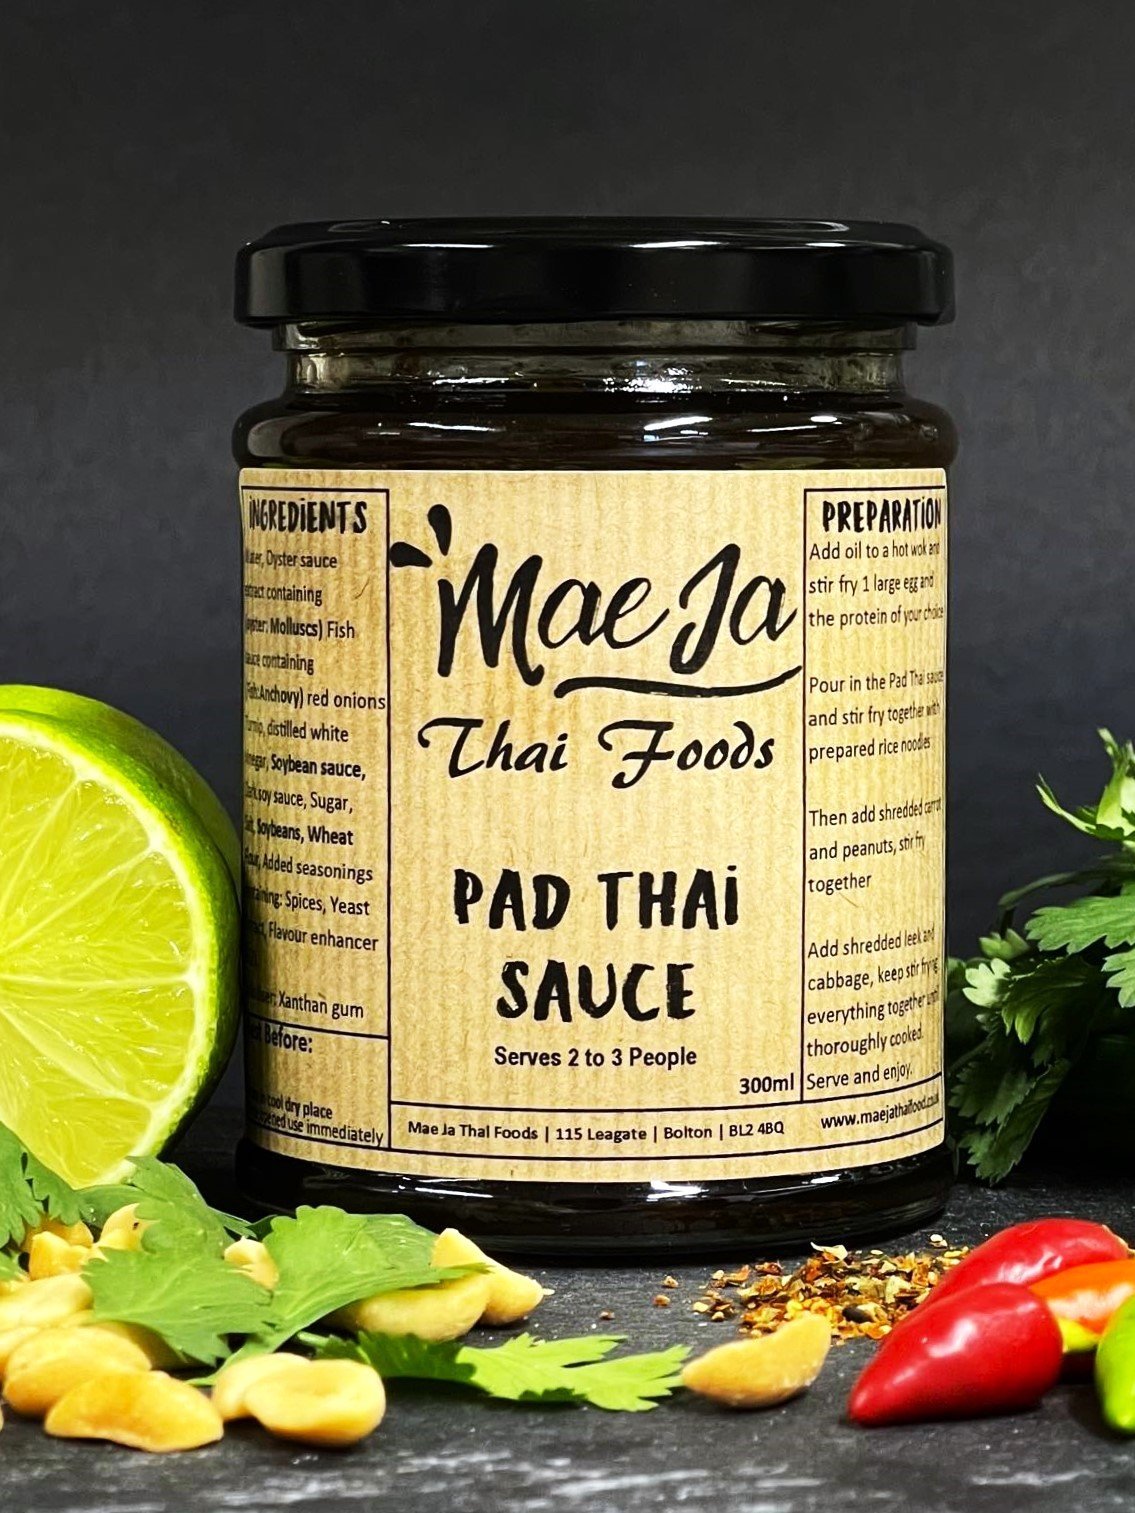 Pad Thai Sauce in a Jar